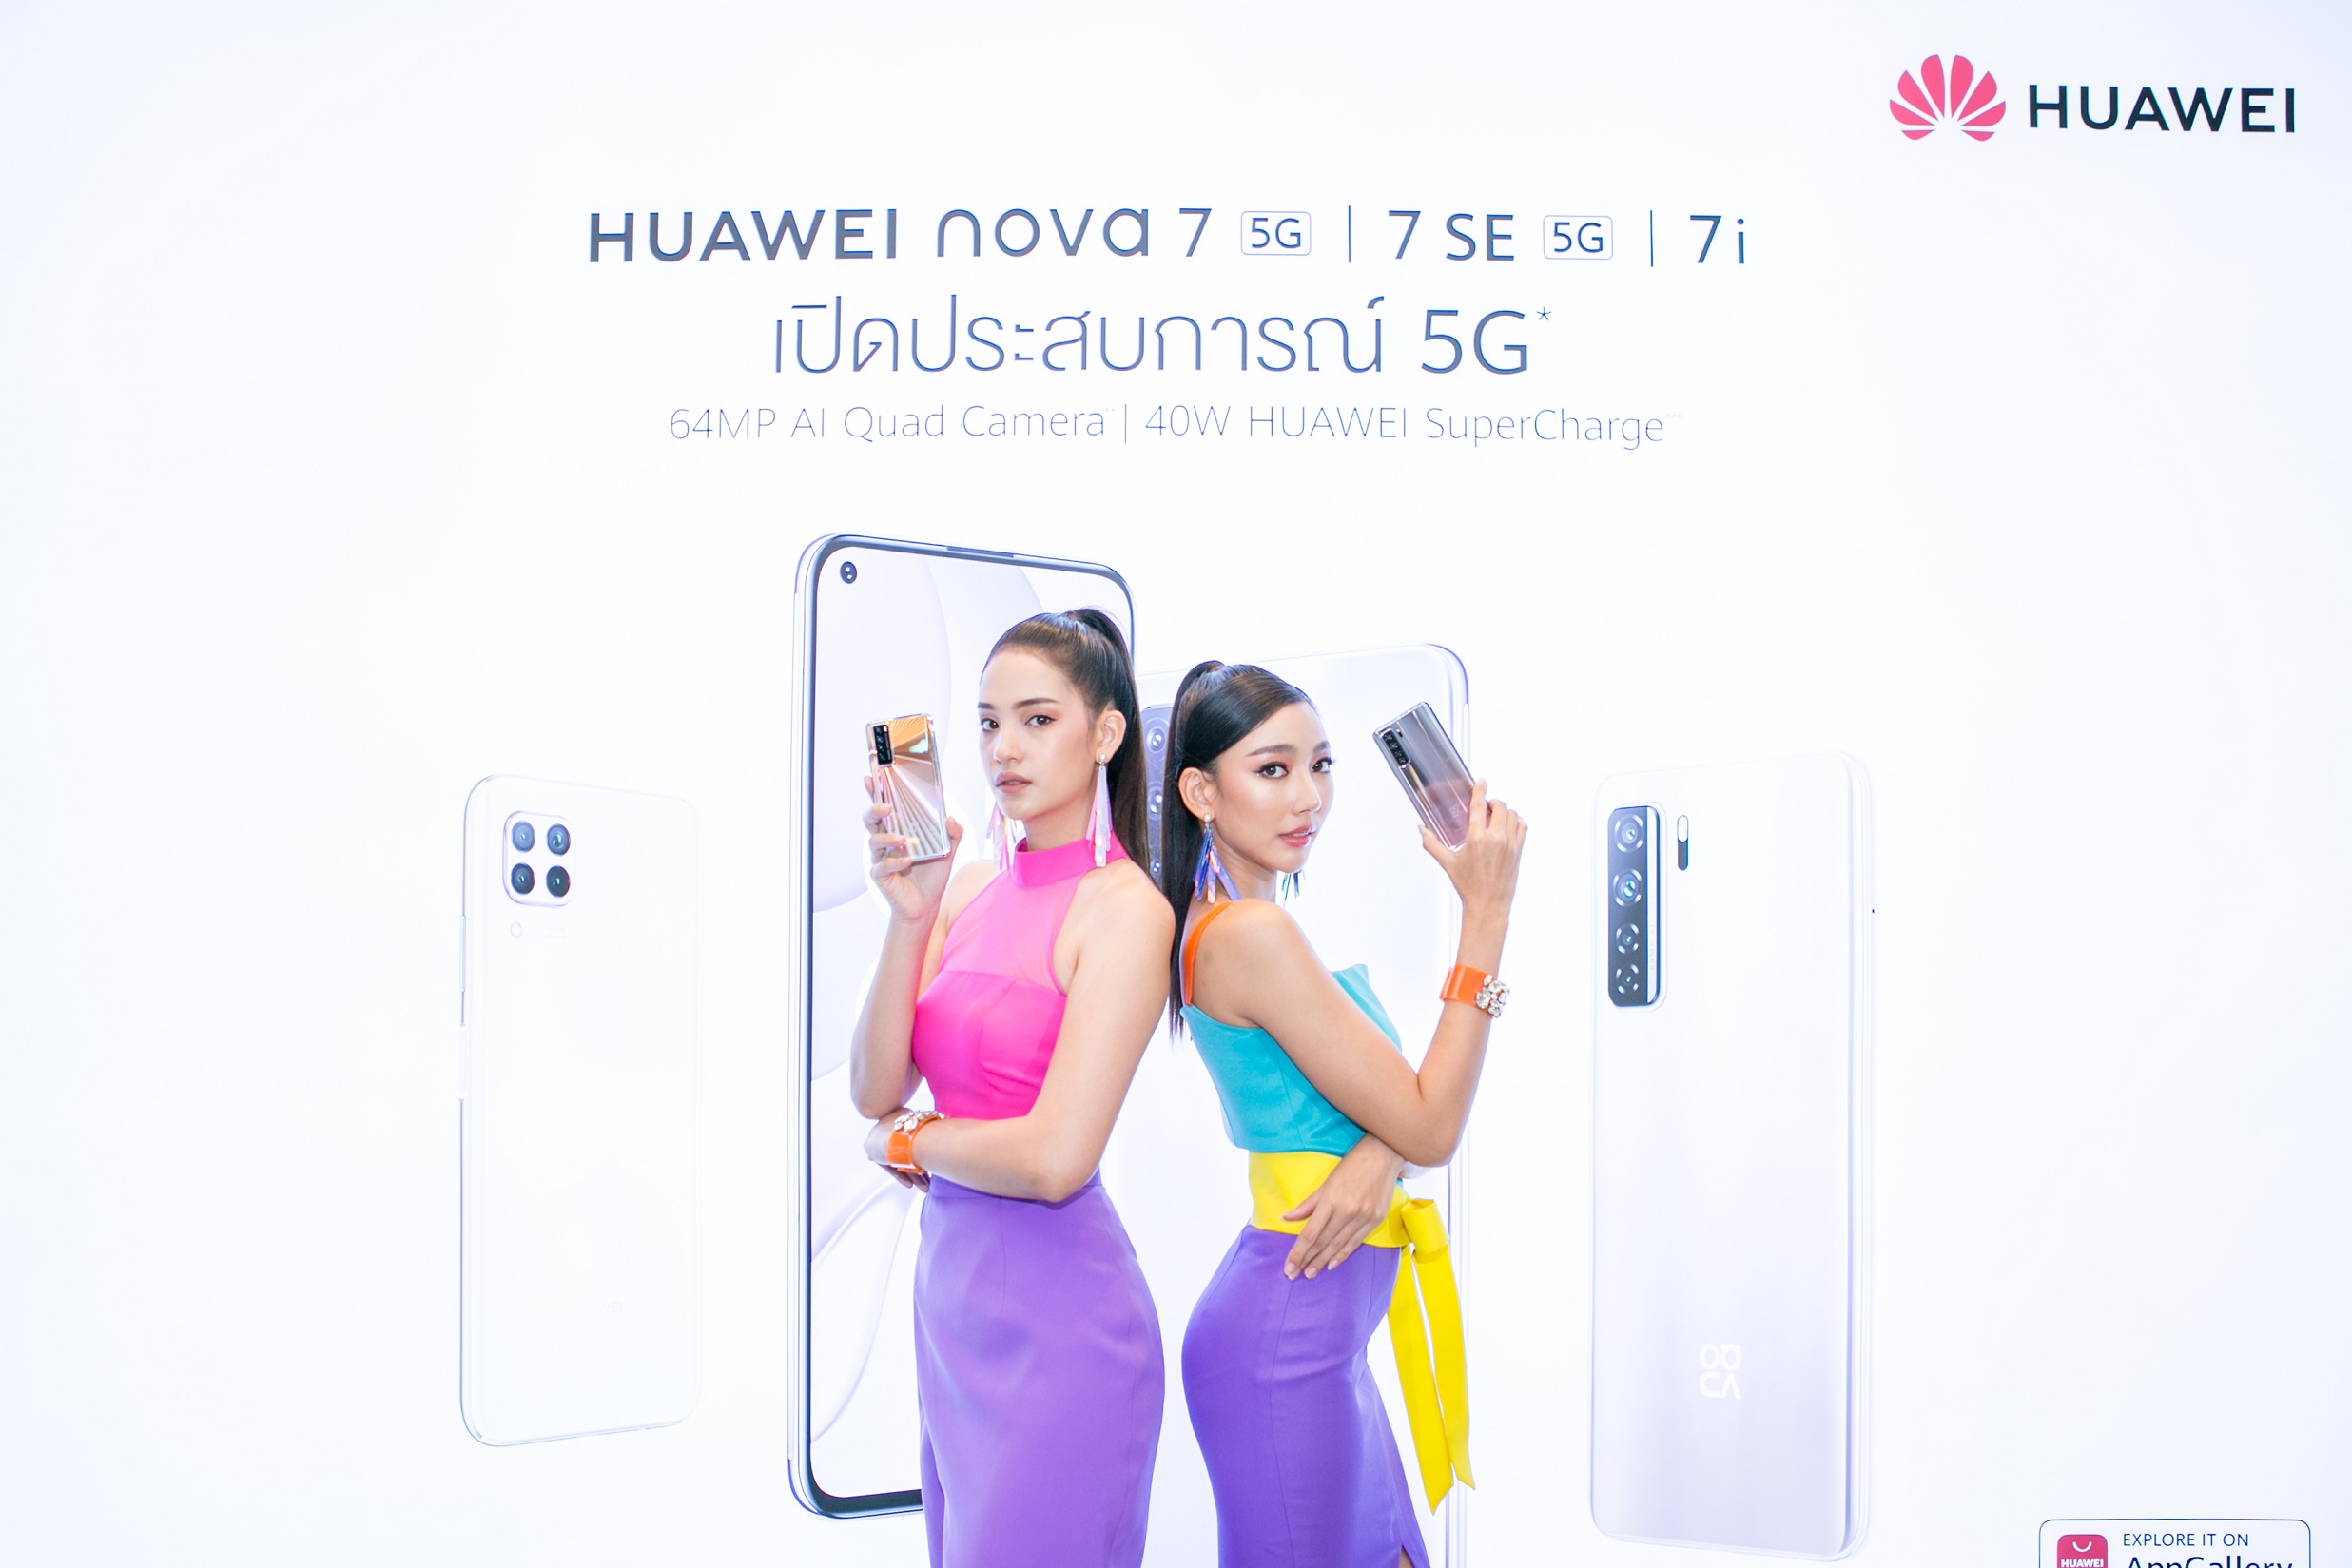 หัวเว่ยเปิดตัว HUAWEI nova 7 และ nova 7 SE สมาร์ทโฟน 5G รุ่นใหม่ จัดเต็มสเปคระดับท็อปและ 4 กล้องอัจฉริยะ